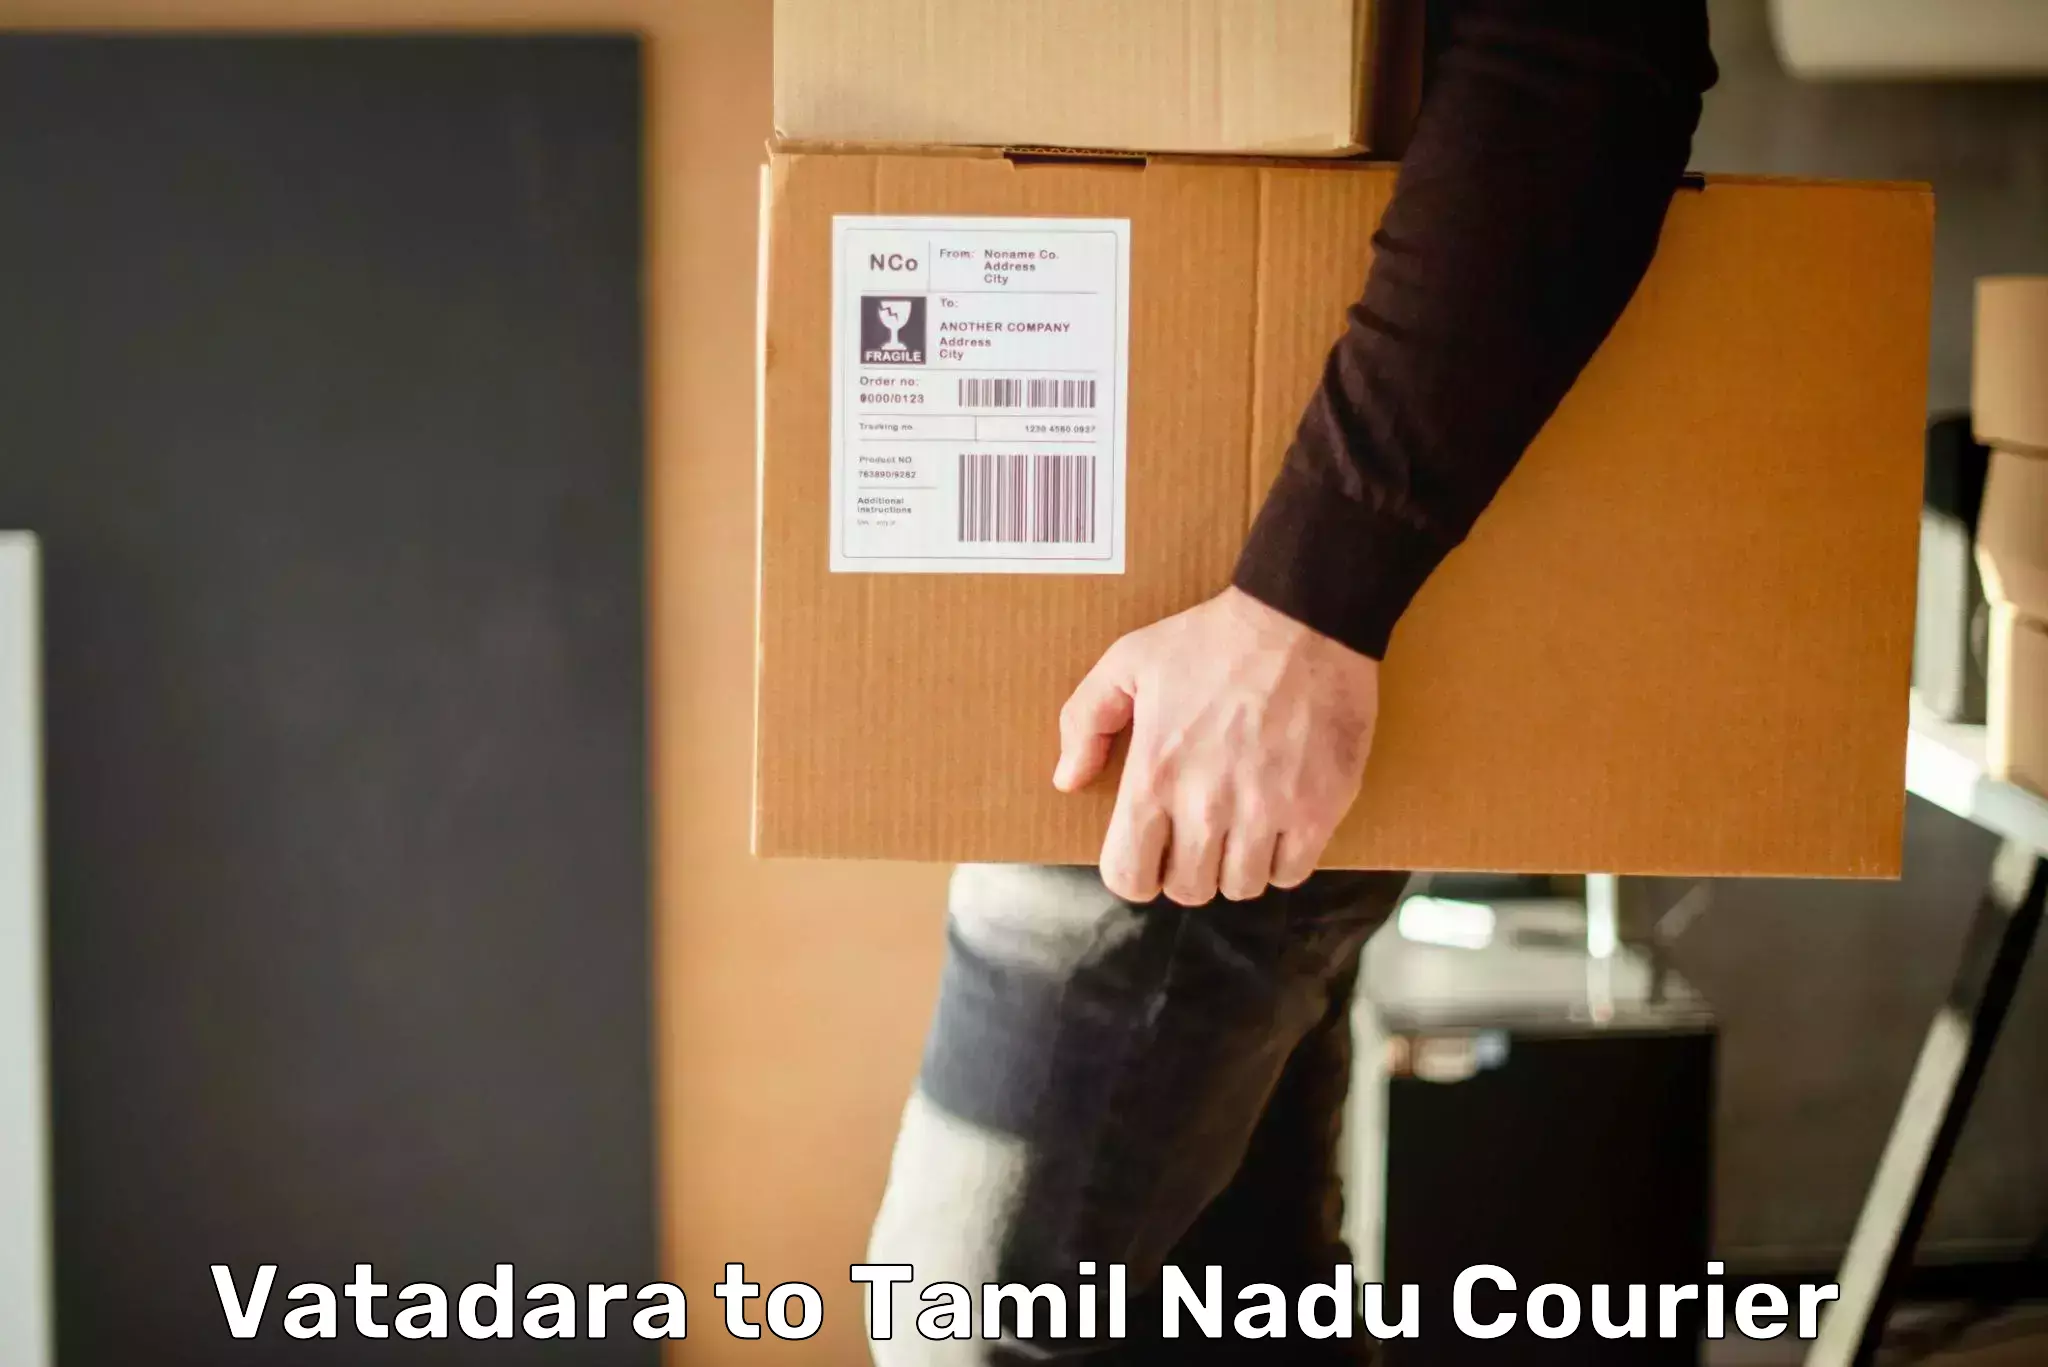 Efficient cargo handling Vatadara to Tamil Nadu